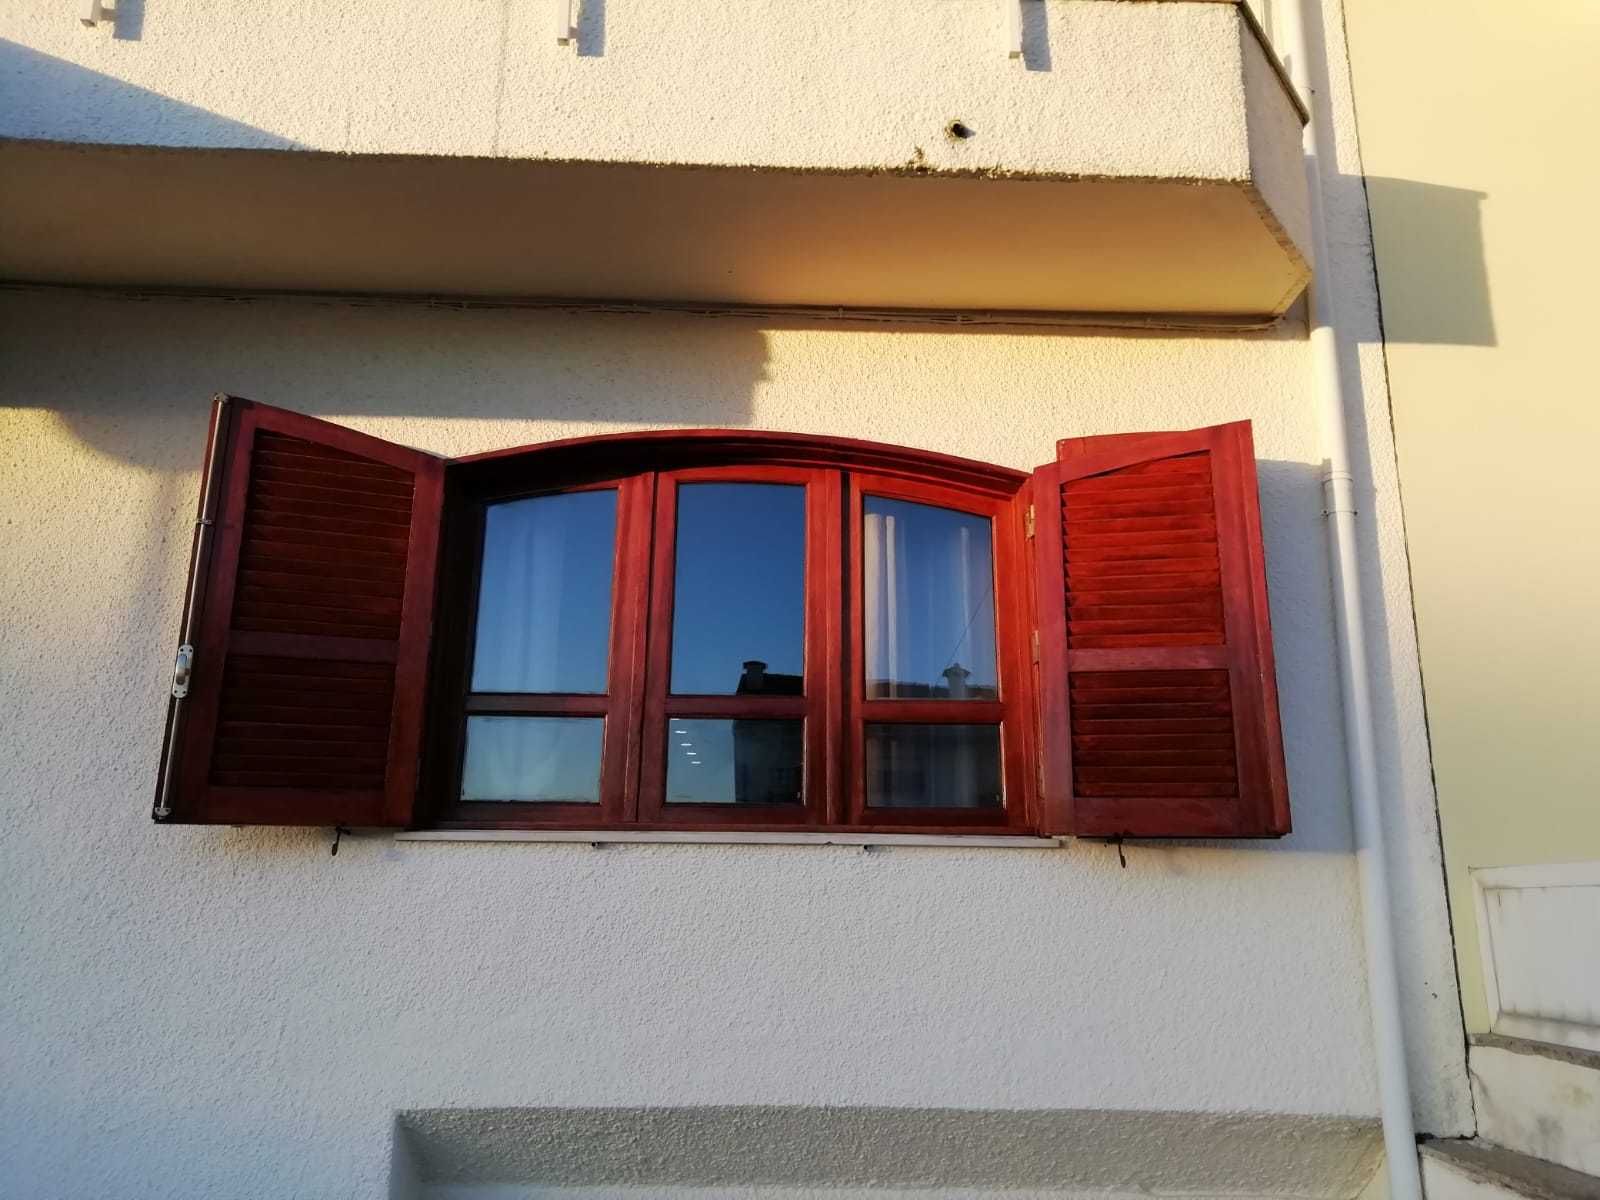 janela e respectiva portada exterior em madeira antiga